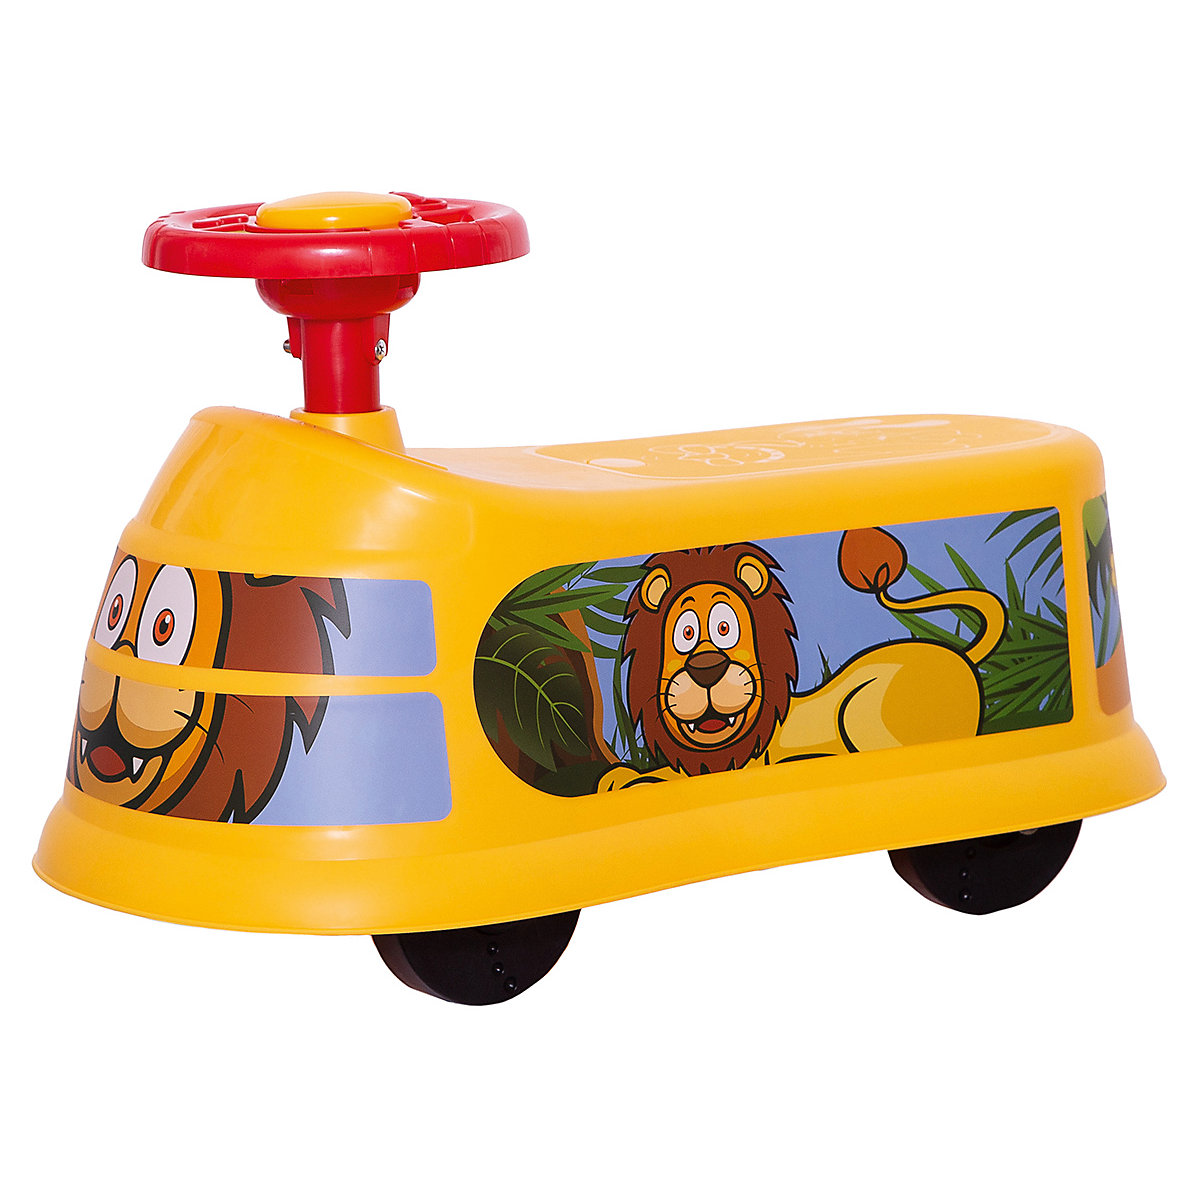 LUME Kids [สินค้าใหม่] ของเล่น รถเด็กเล่นเด็ก รถขาไถ ลายรถม้าลาย-สิงโต-รถดับเพลิง เหมาะสำหรับเด็กฝึกการทรงตัว ราคาสุดพิเศษ